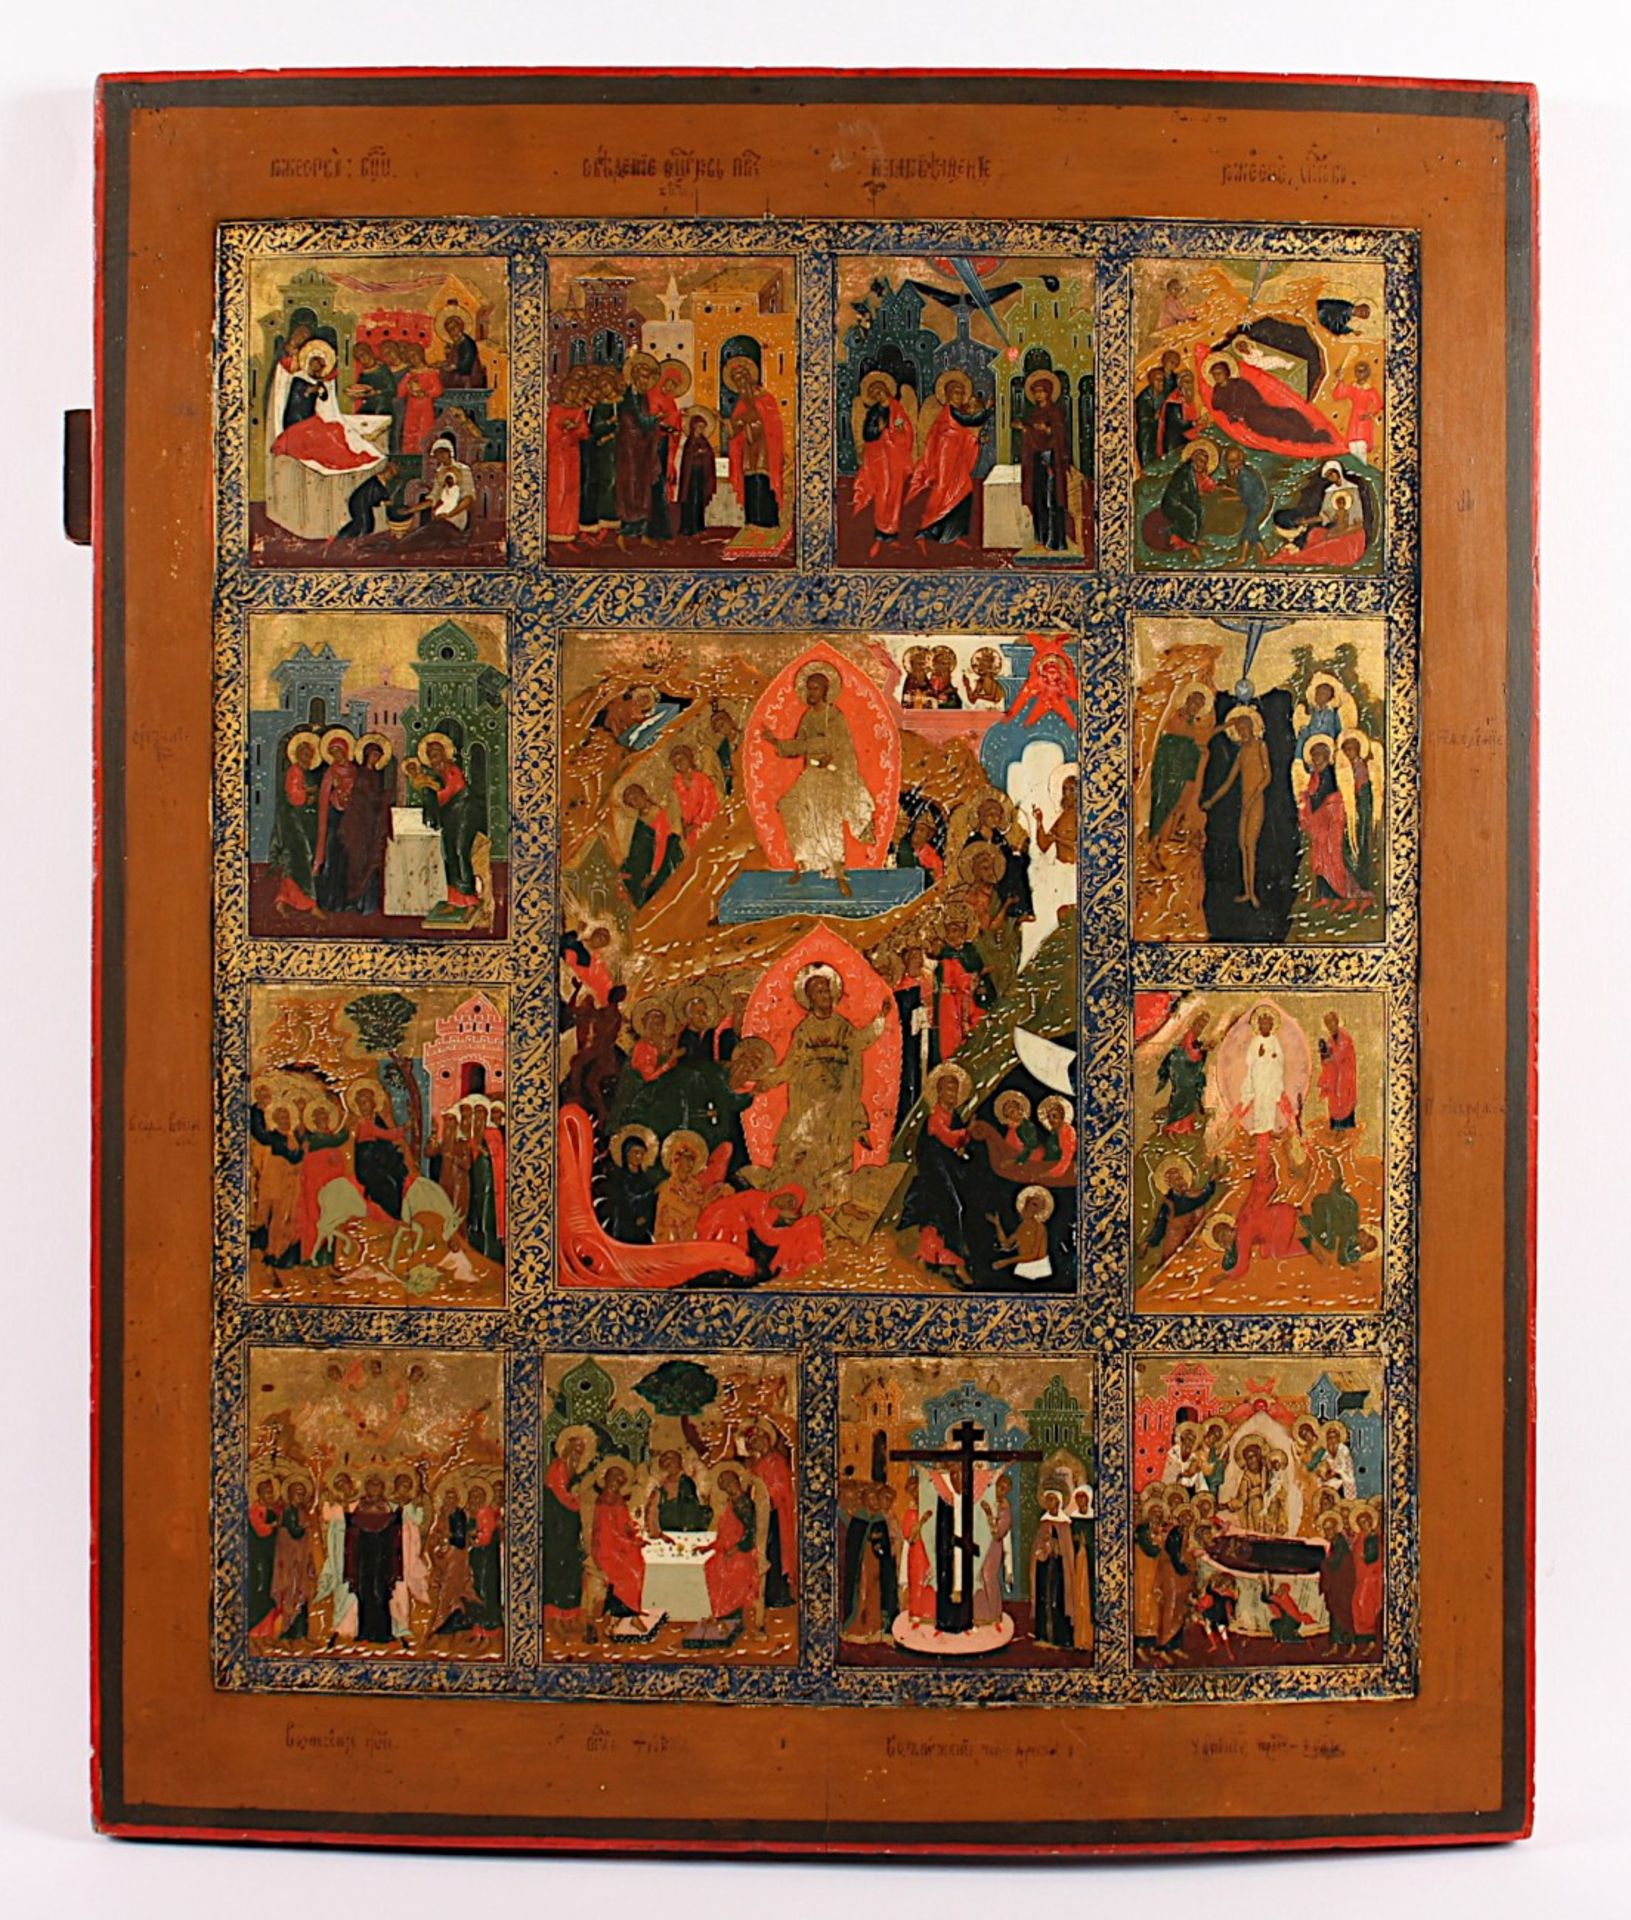 GROSSE SIGNIERTE FESTTAGSIKONE, Tempera/Holz, Goldgrund, 61,5 x 51, Feinmalerei in leuchtender